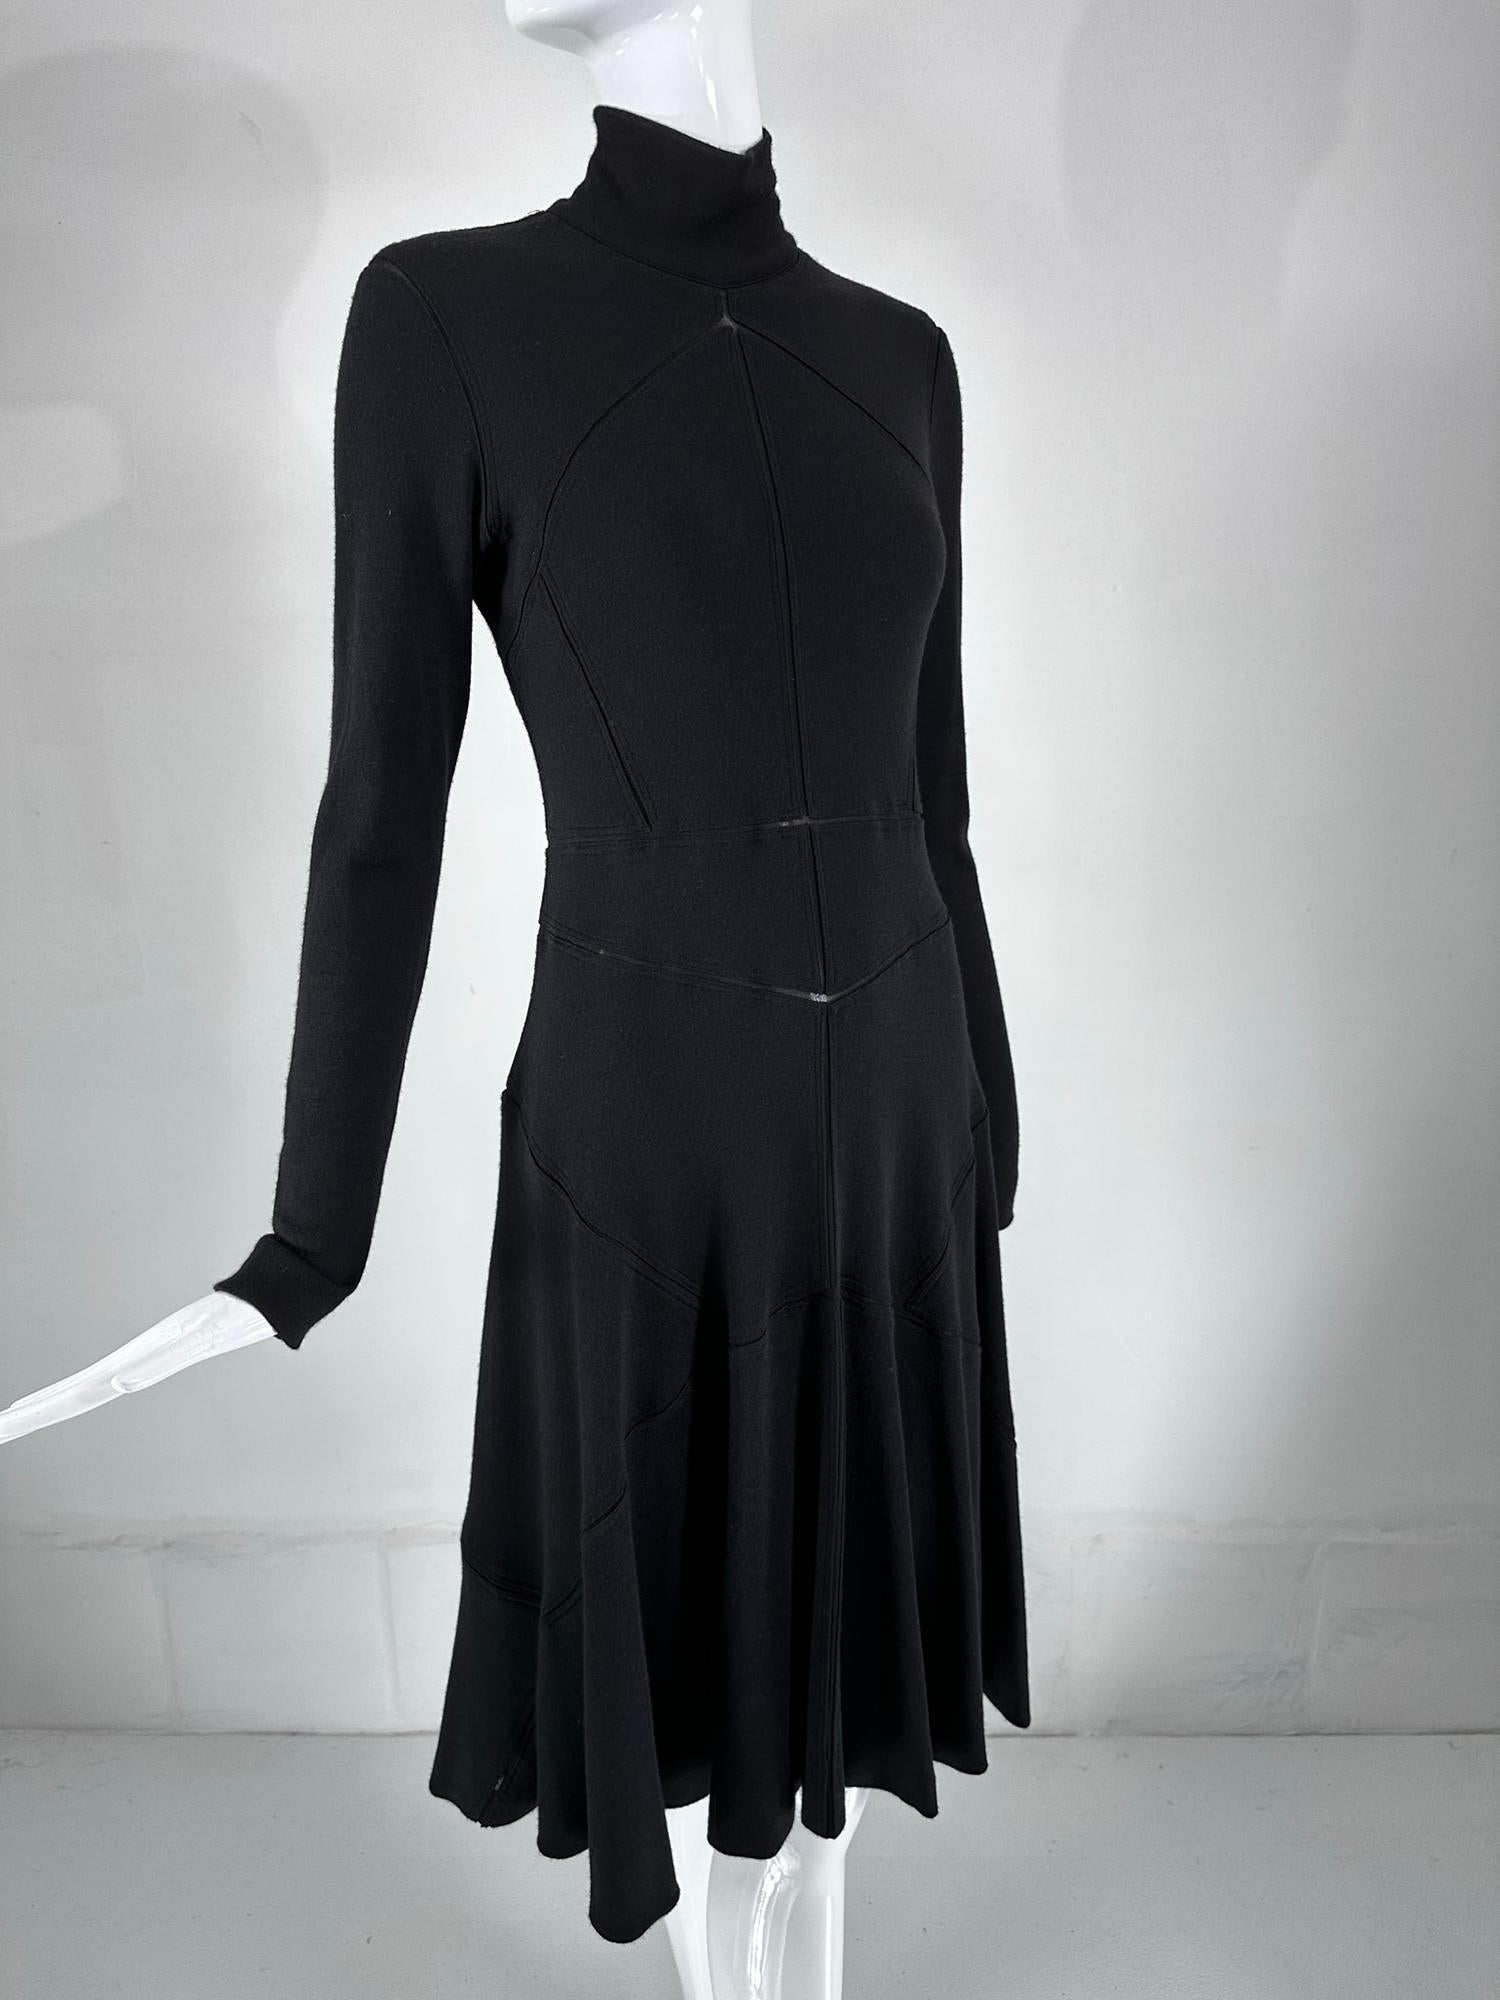 Robe classique à coutures apparentes en biais en cachemire et laine mélangés, de couleur noire, de Calvin Klein. Vintage By à son meilleur, cette robe est sophistiquée et parfaite pour le jour comme pour le soir. Encolure tortue, avec de longues